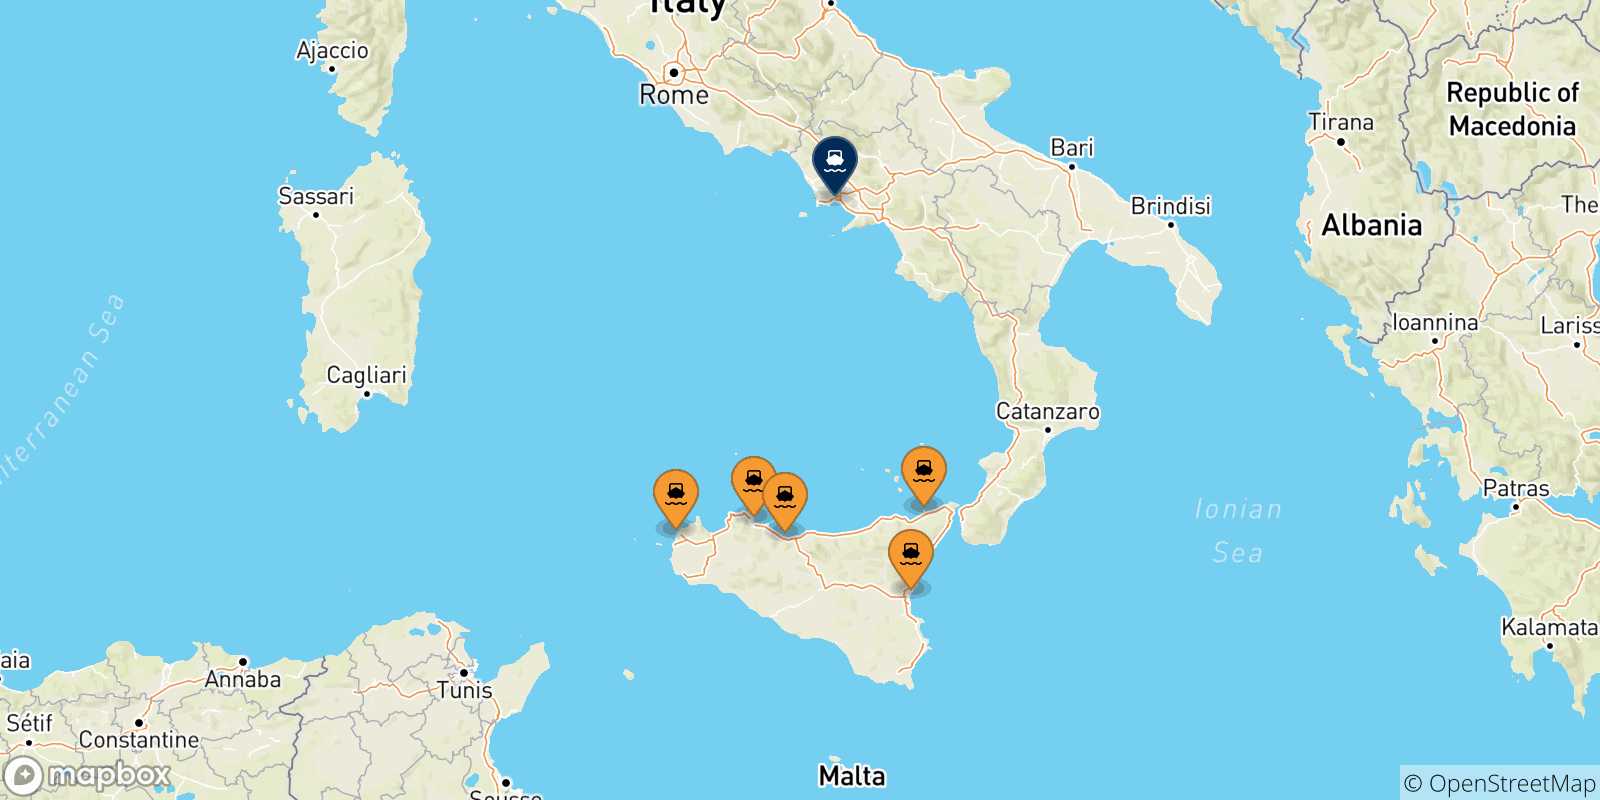 Mappa delle possibili rotte tra la Sicilia e Napoli